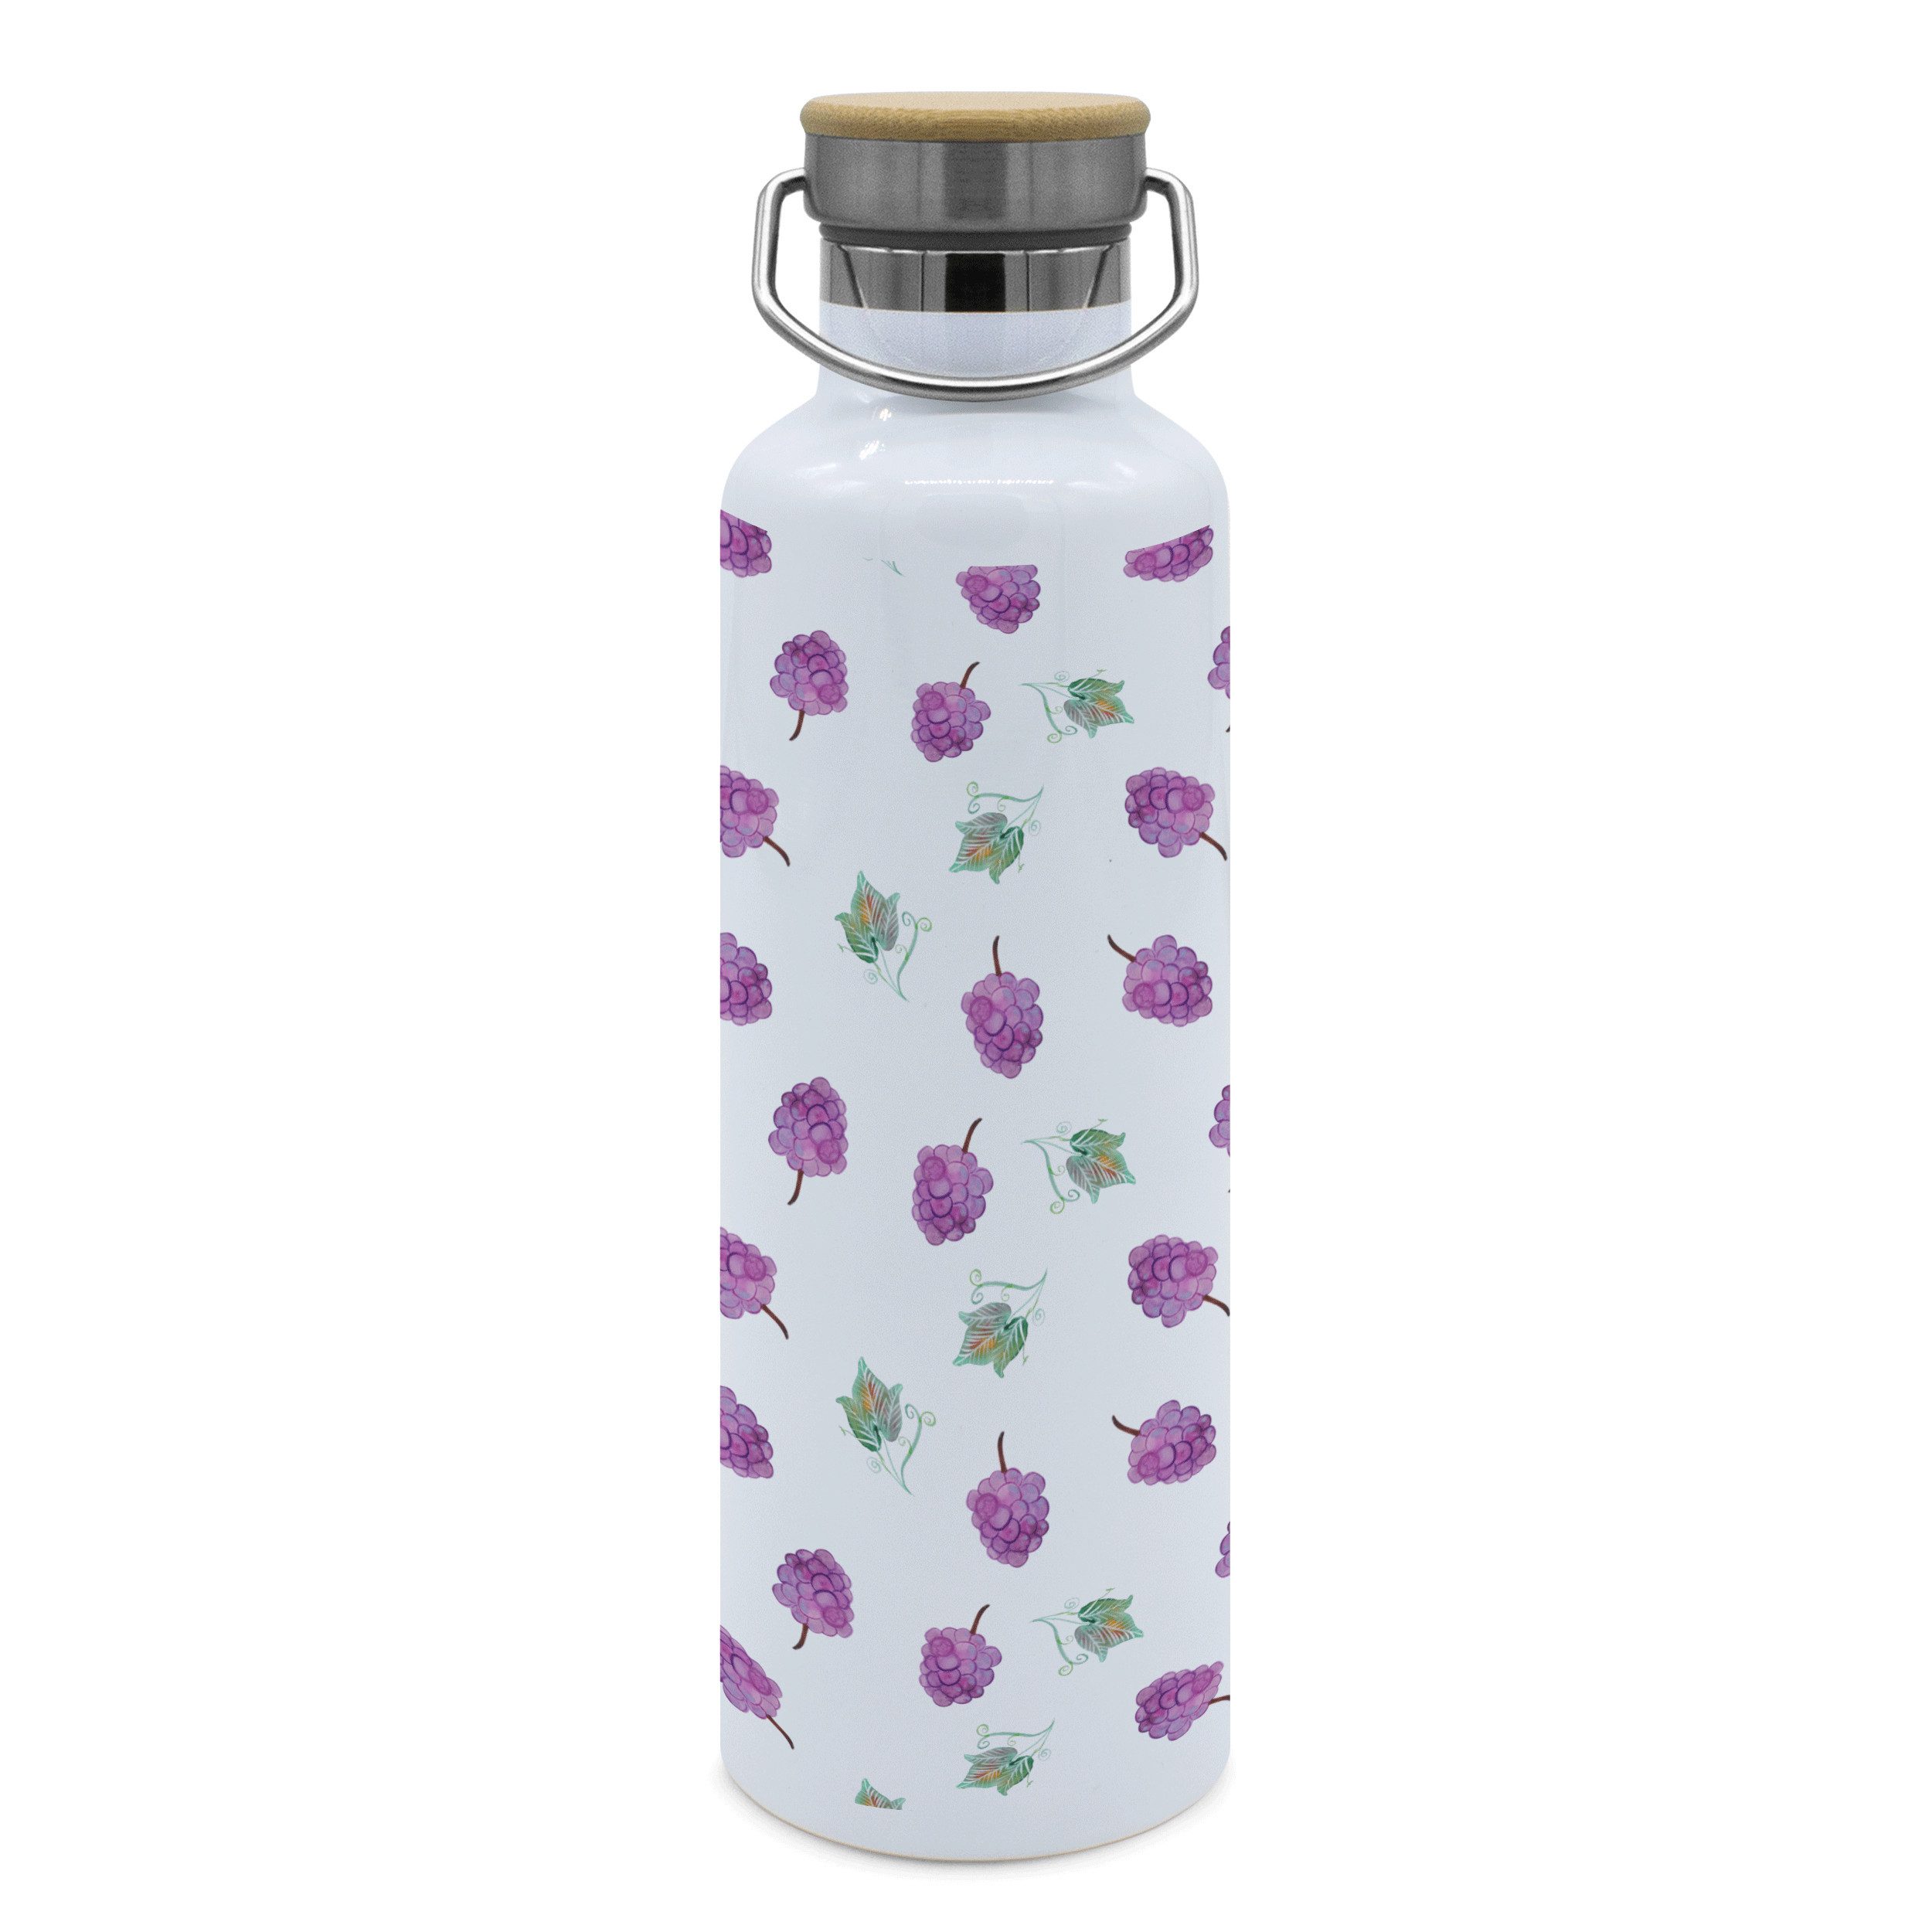 Mr. & Mrs. Panda Feldflasche Wein Trauben - Violett - Geschenk, Weintrauben Muster, Sportlerflasch, Stylish und praktisch